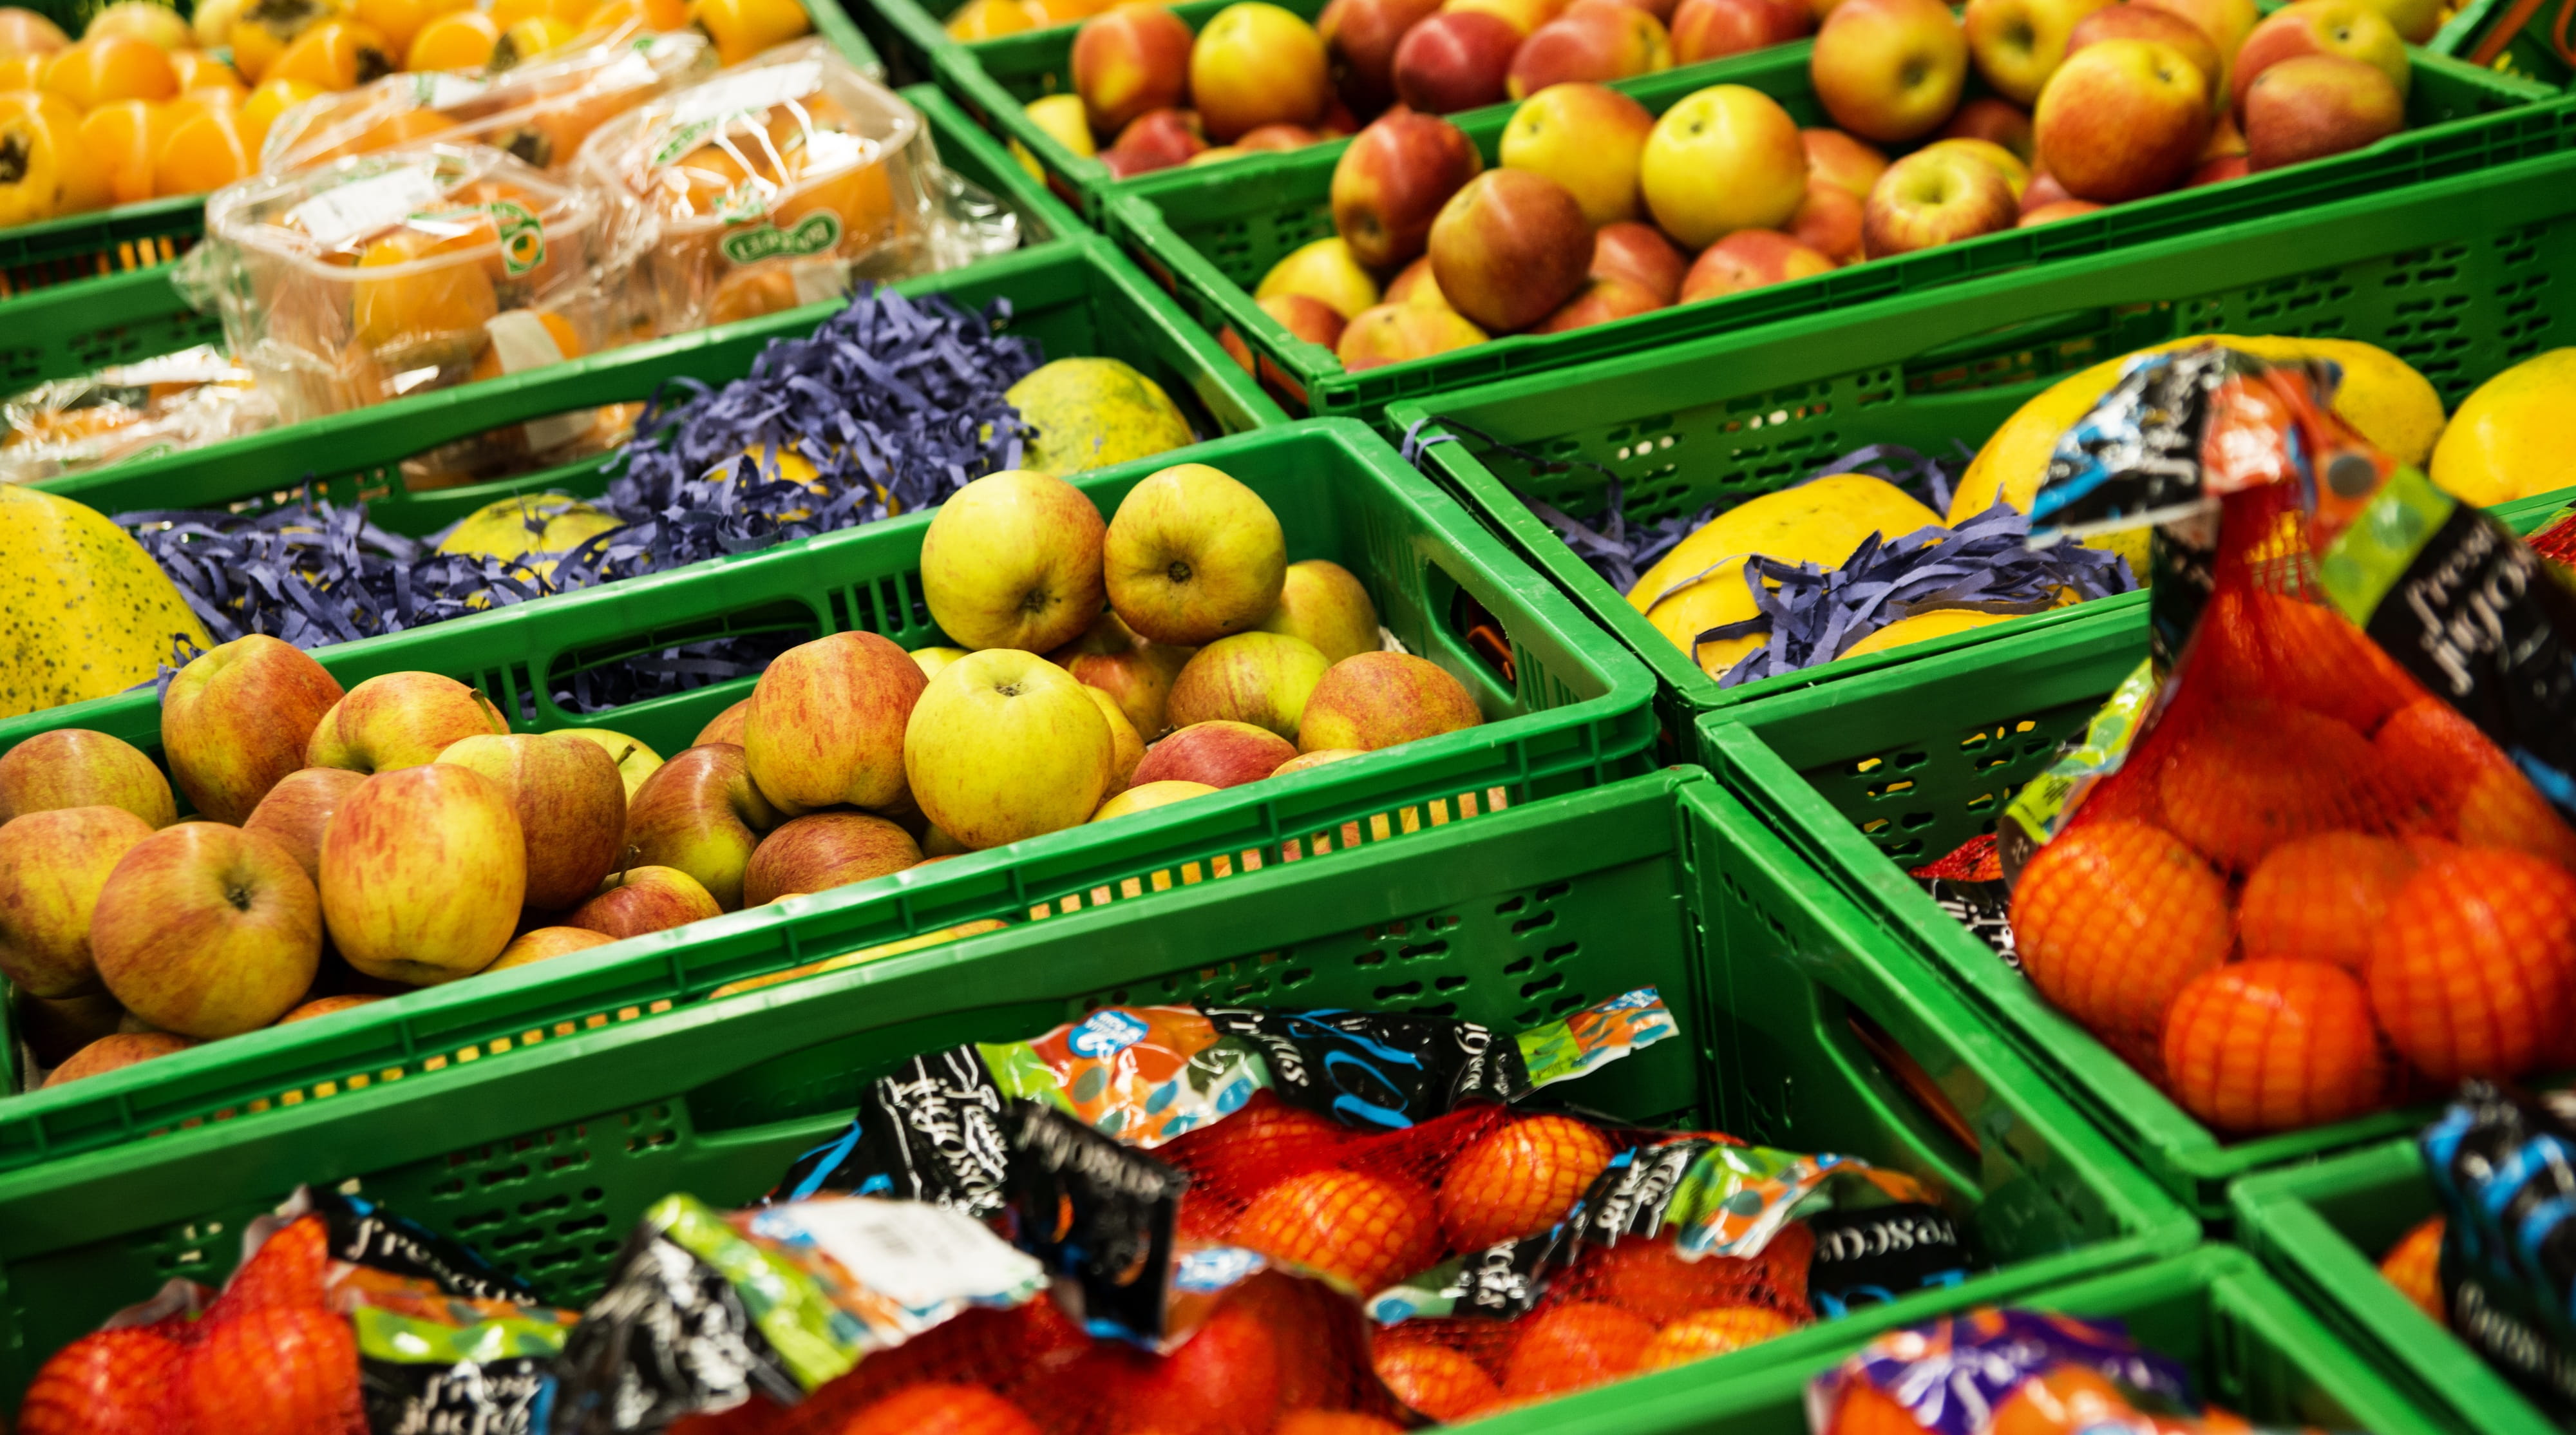 display crate of fruits, Supermarket, Vegetables, Food, Shop